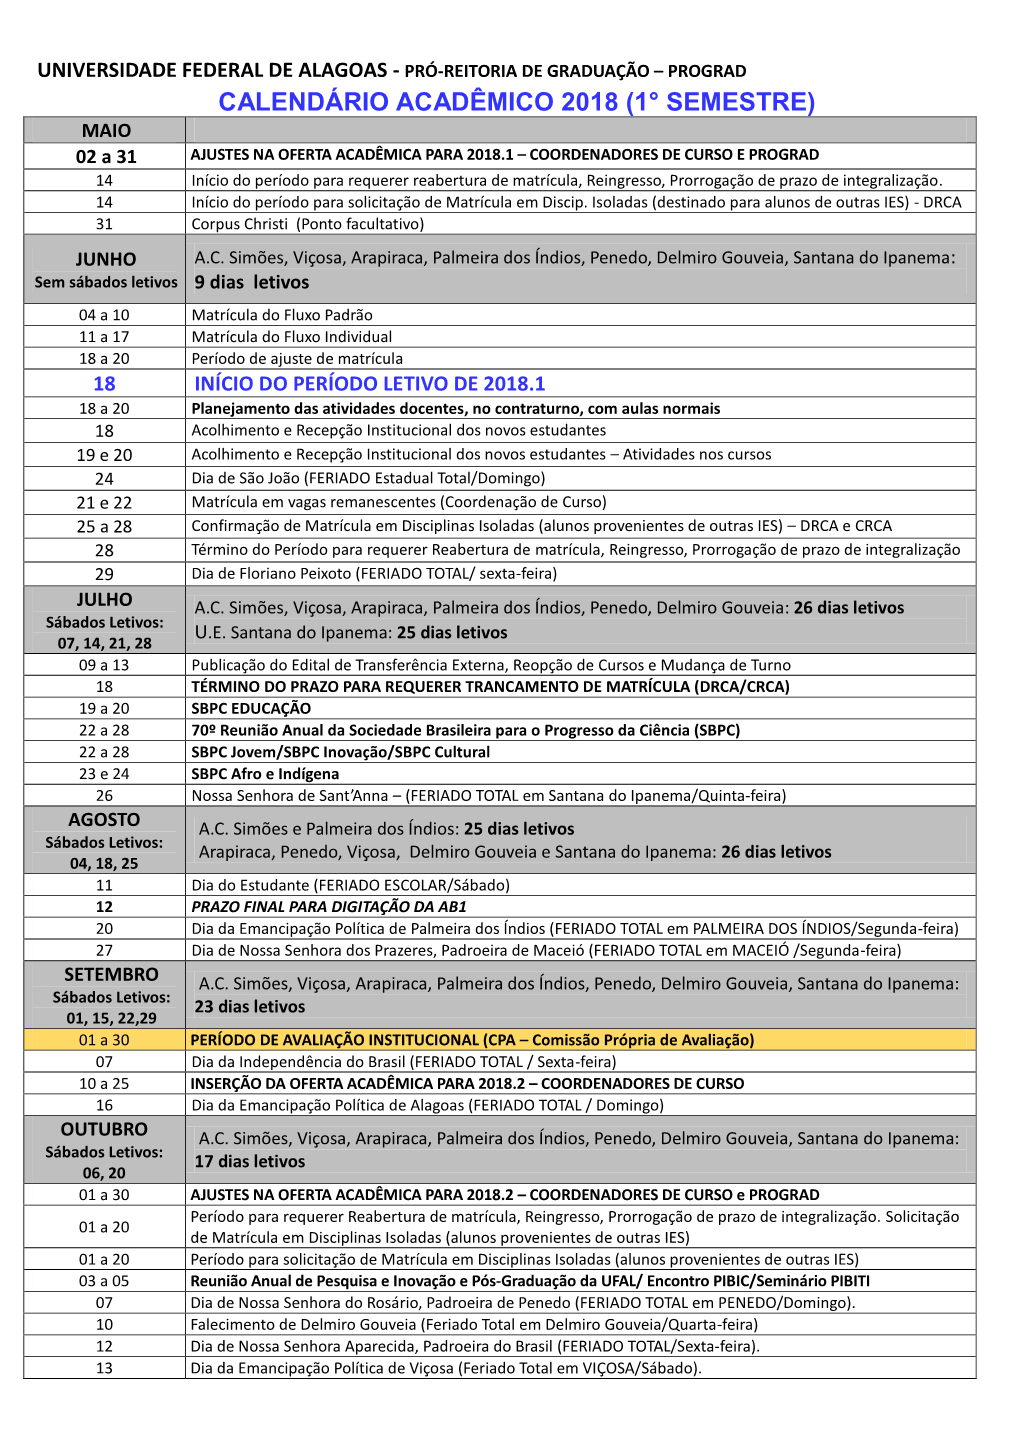 Calendário Acadêmico 2010